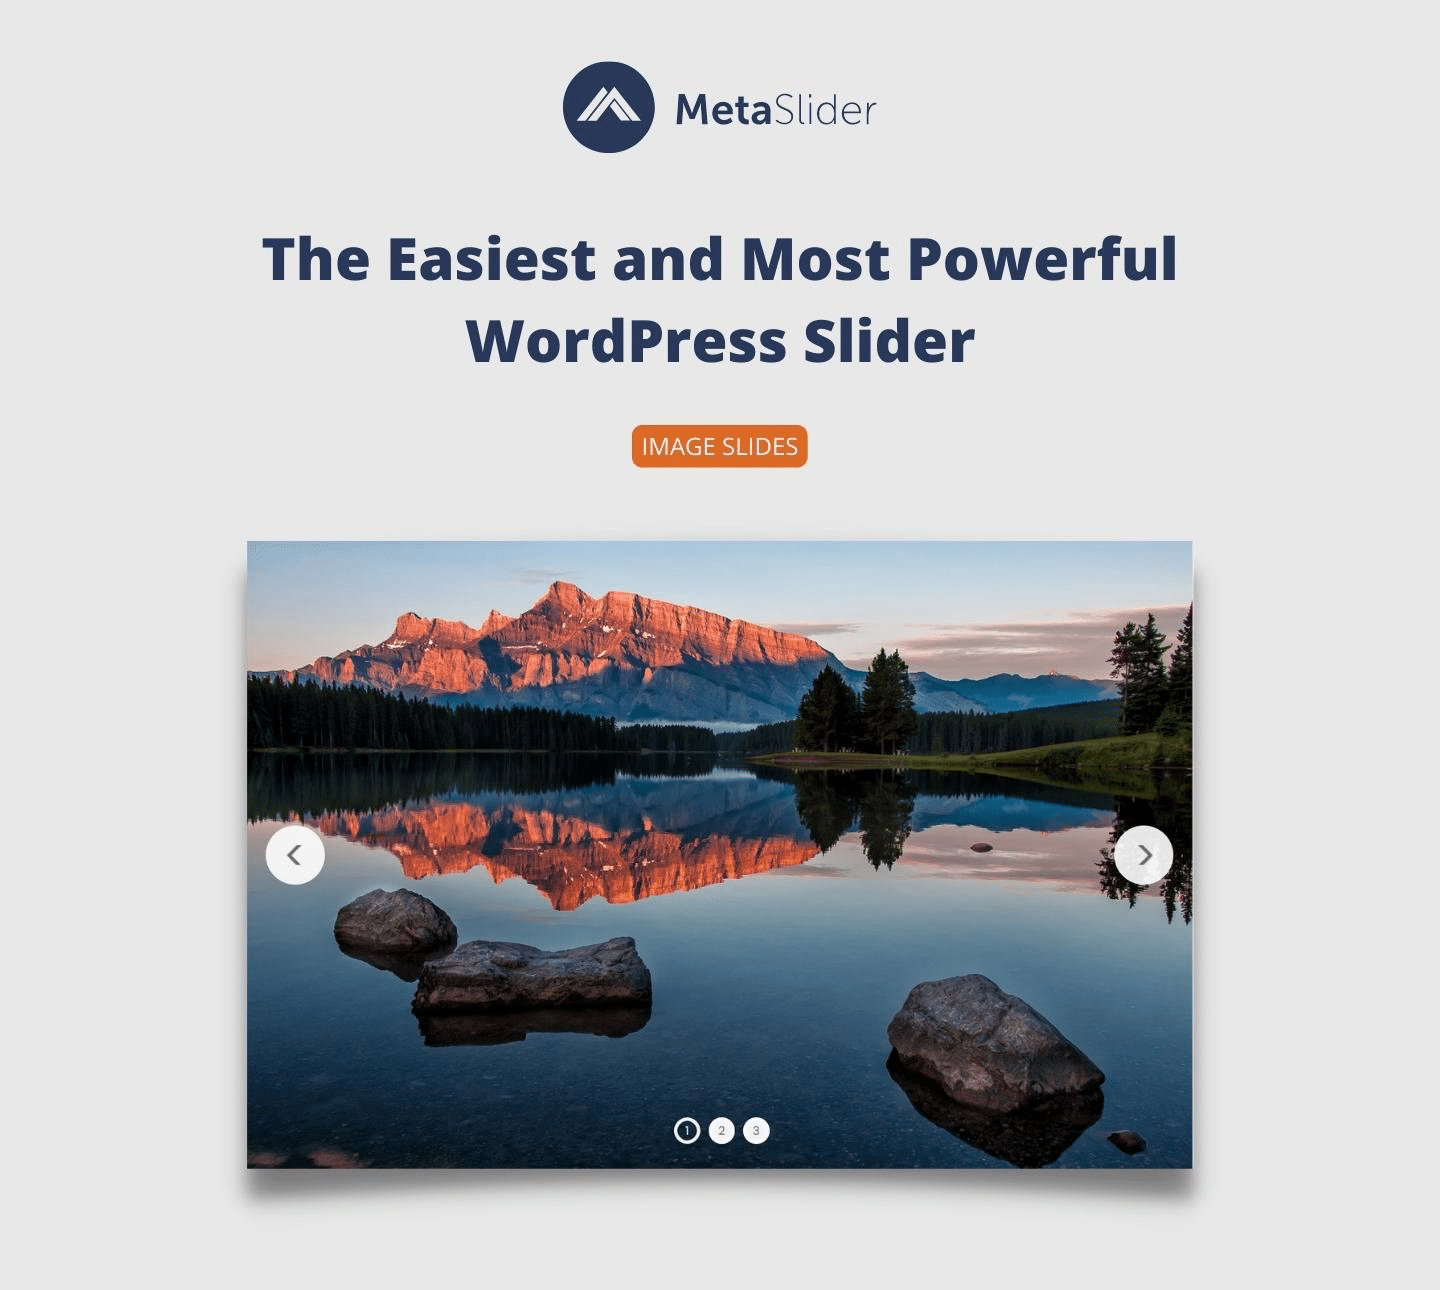 Image slides with MetaSlider